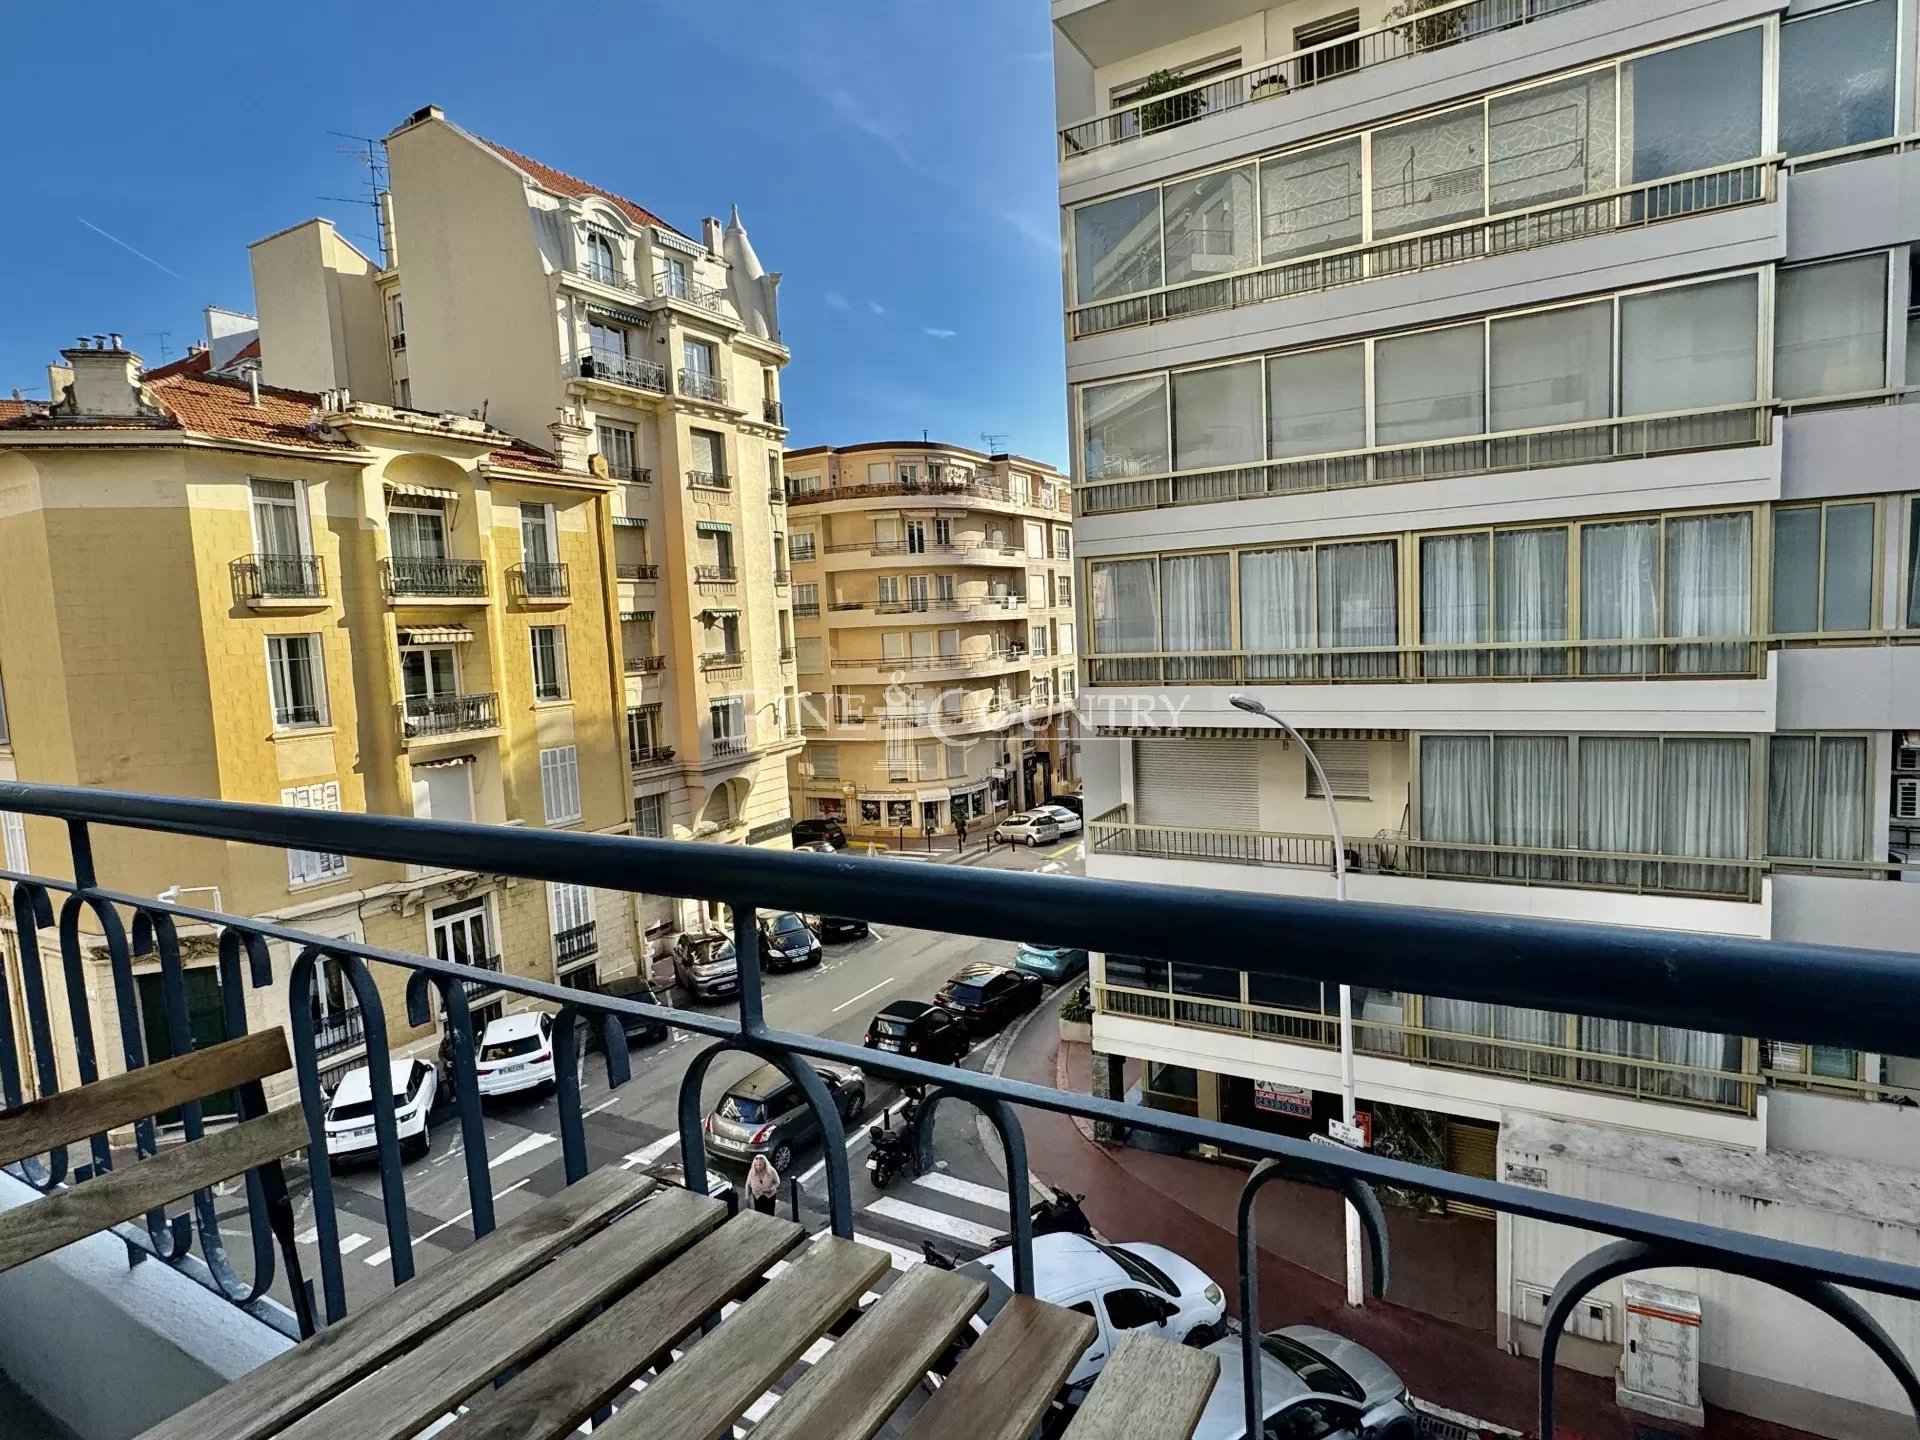 Vente appartement Cannes centre ville banane